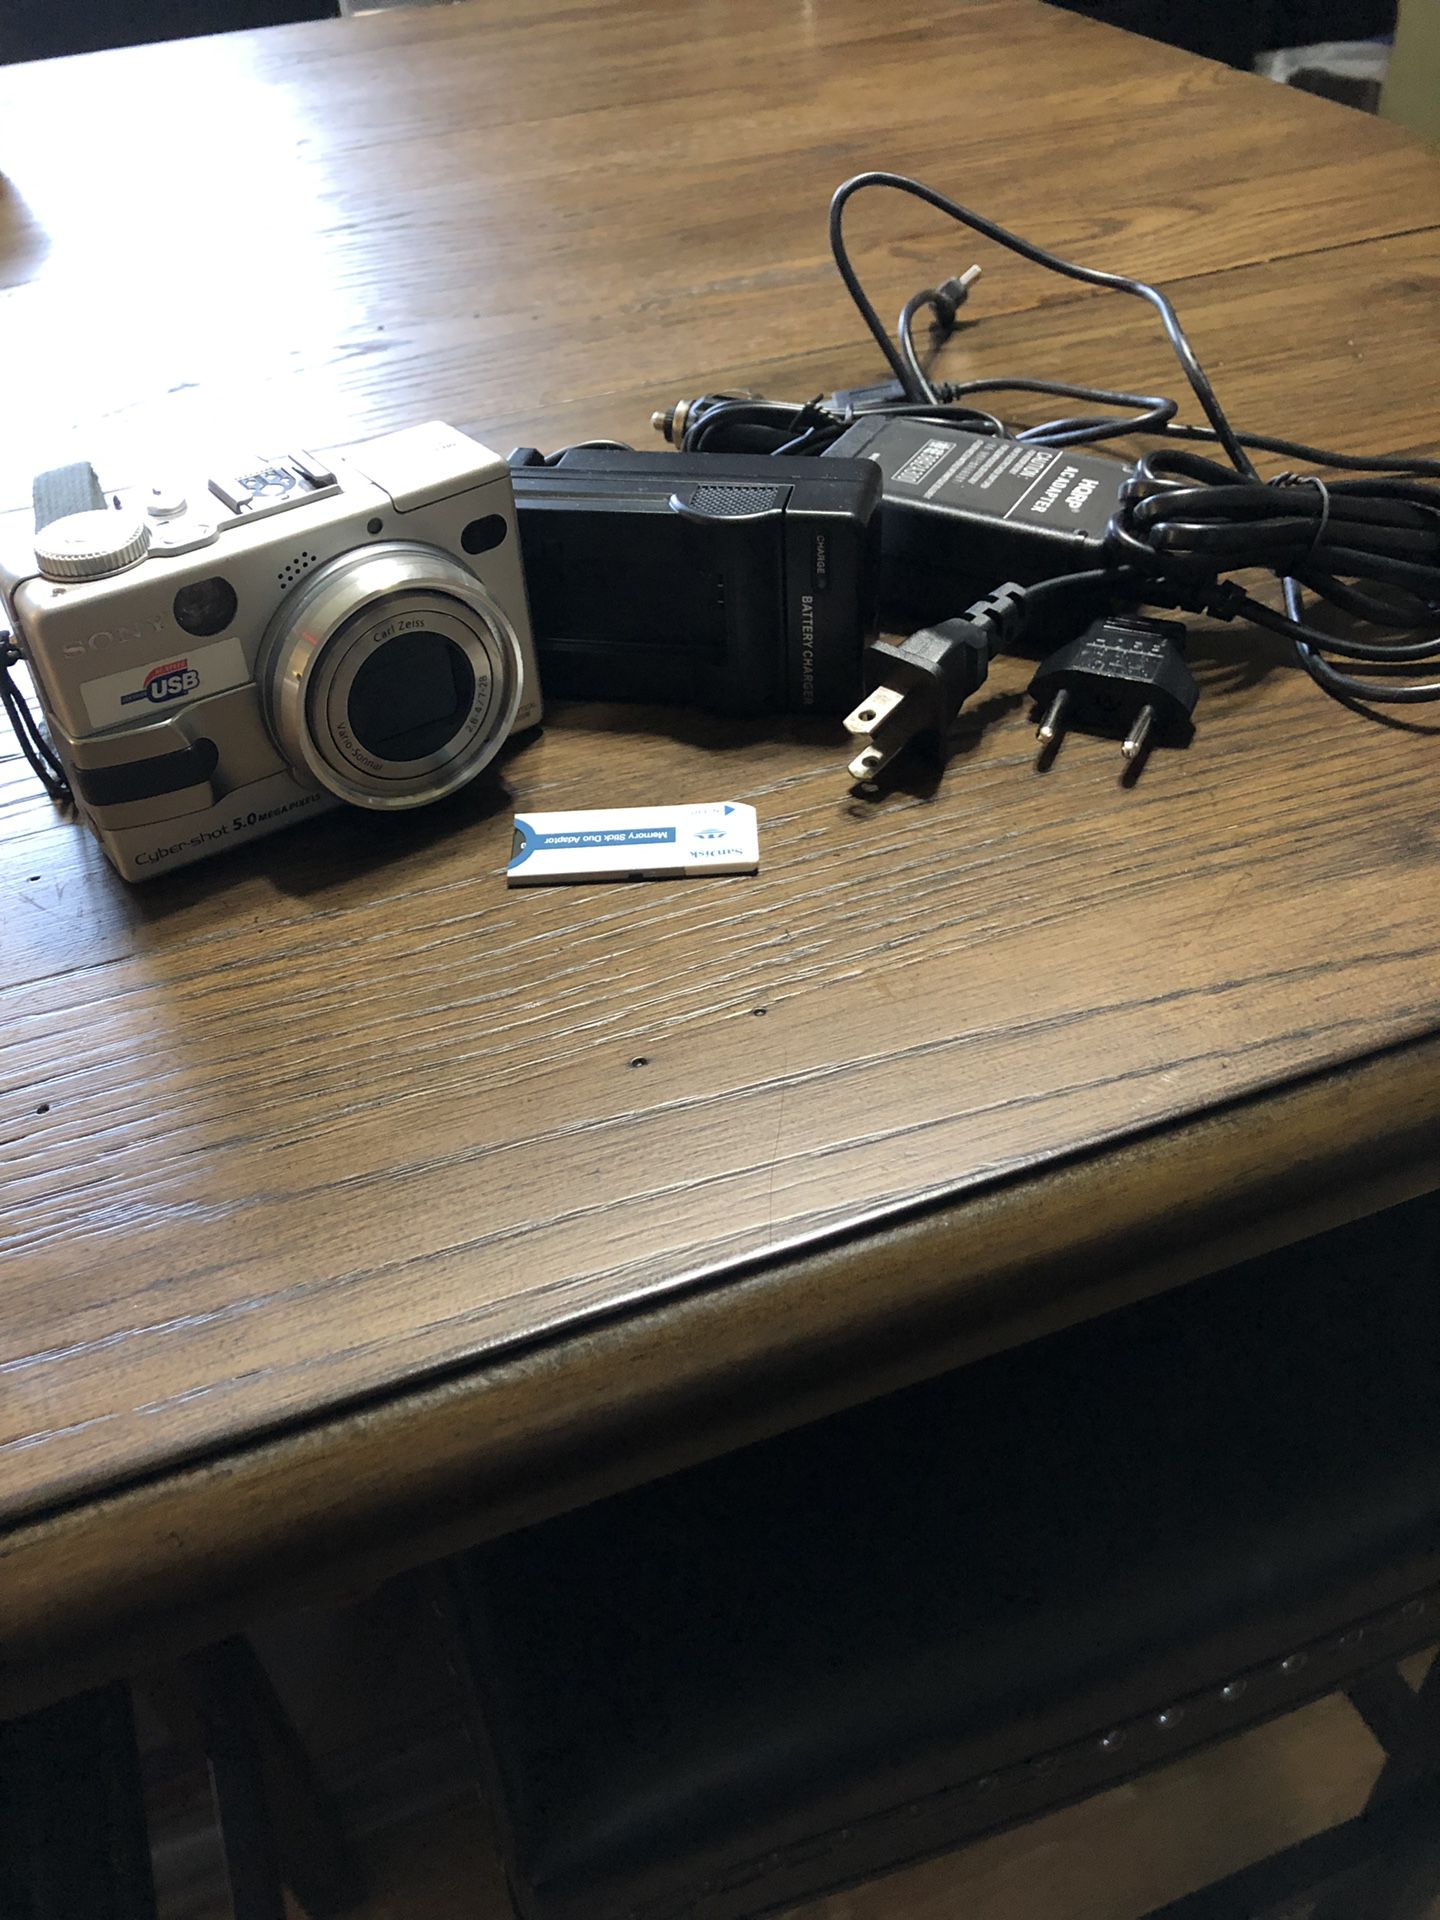 Sony DSC-V1 (Old School) Digital Camera